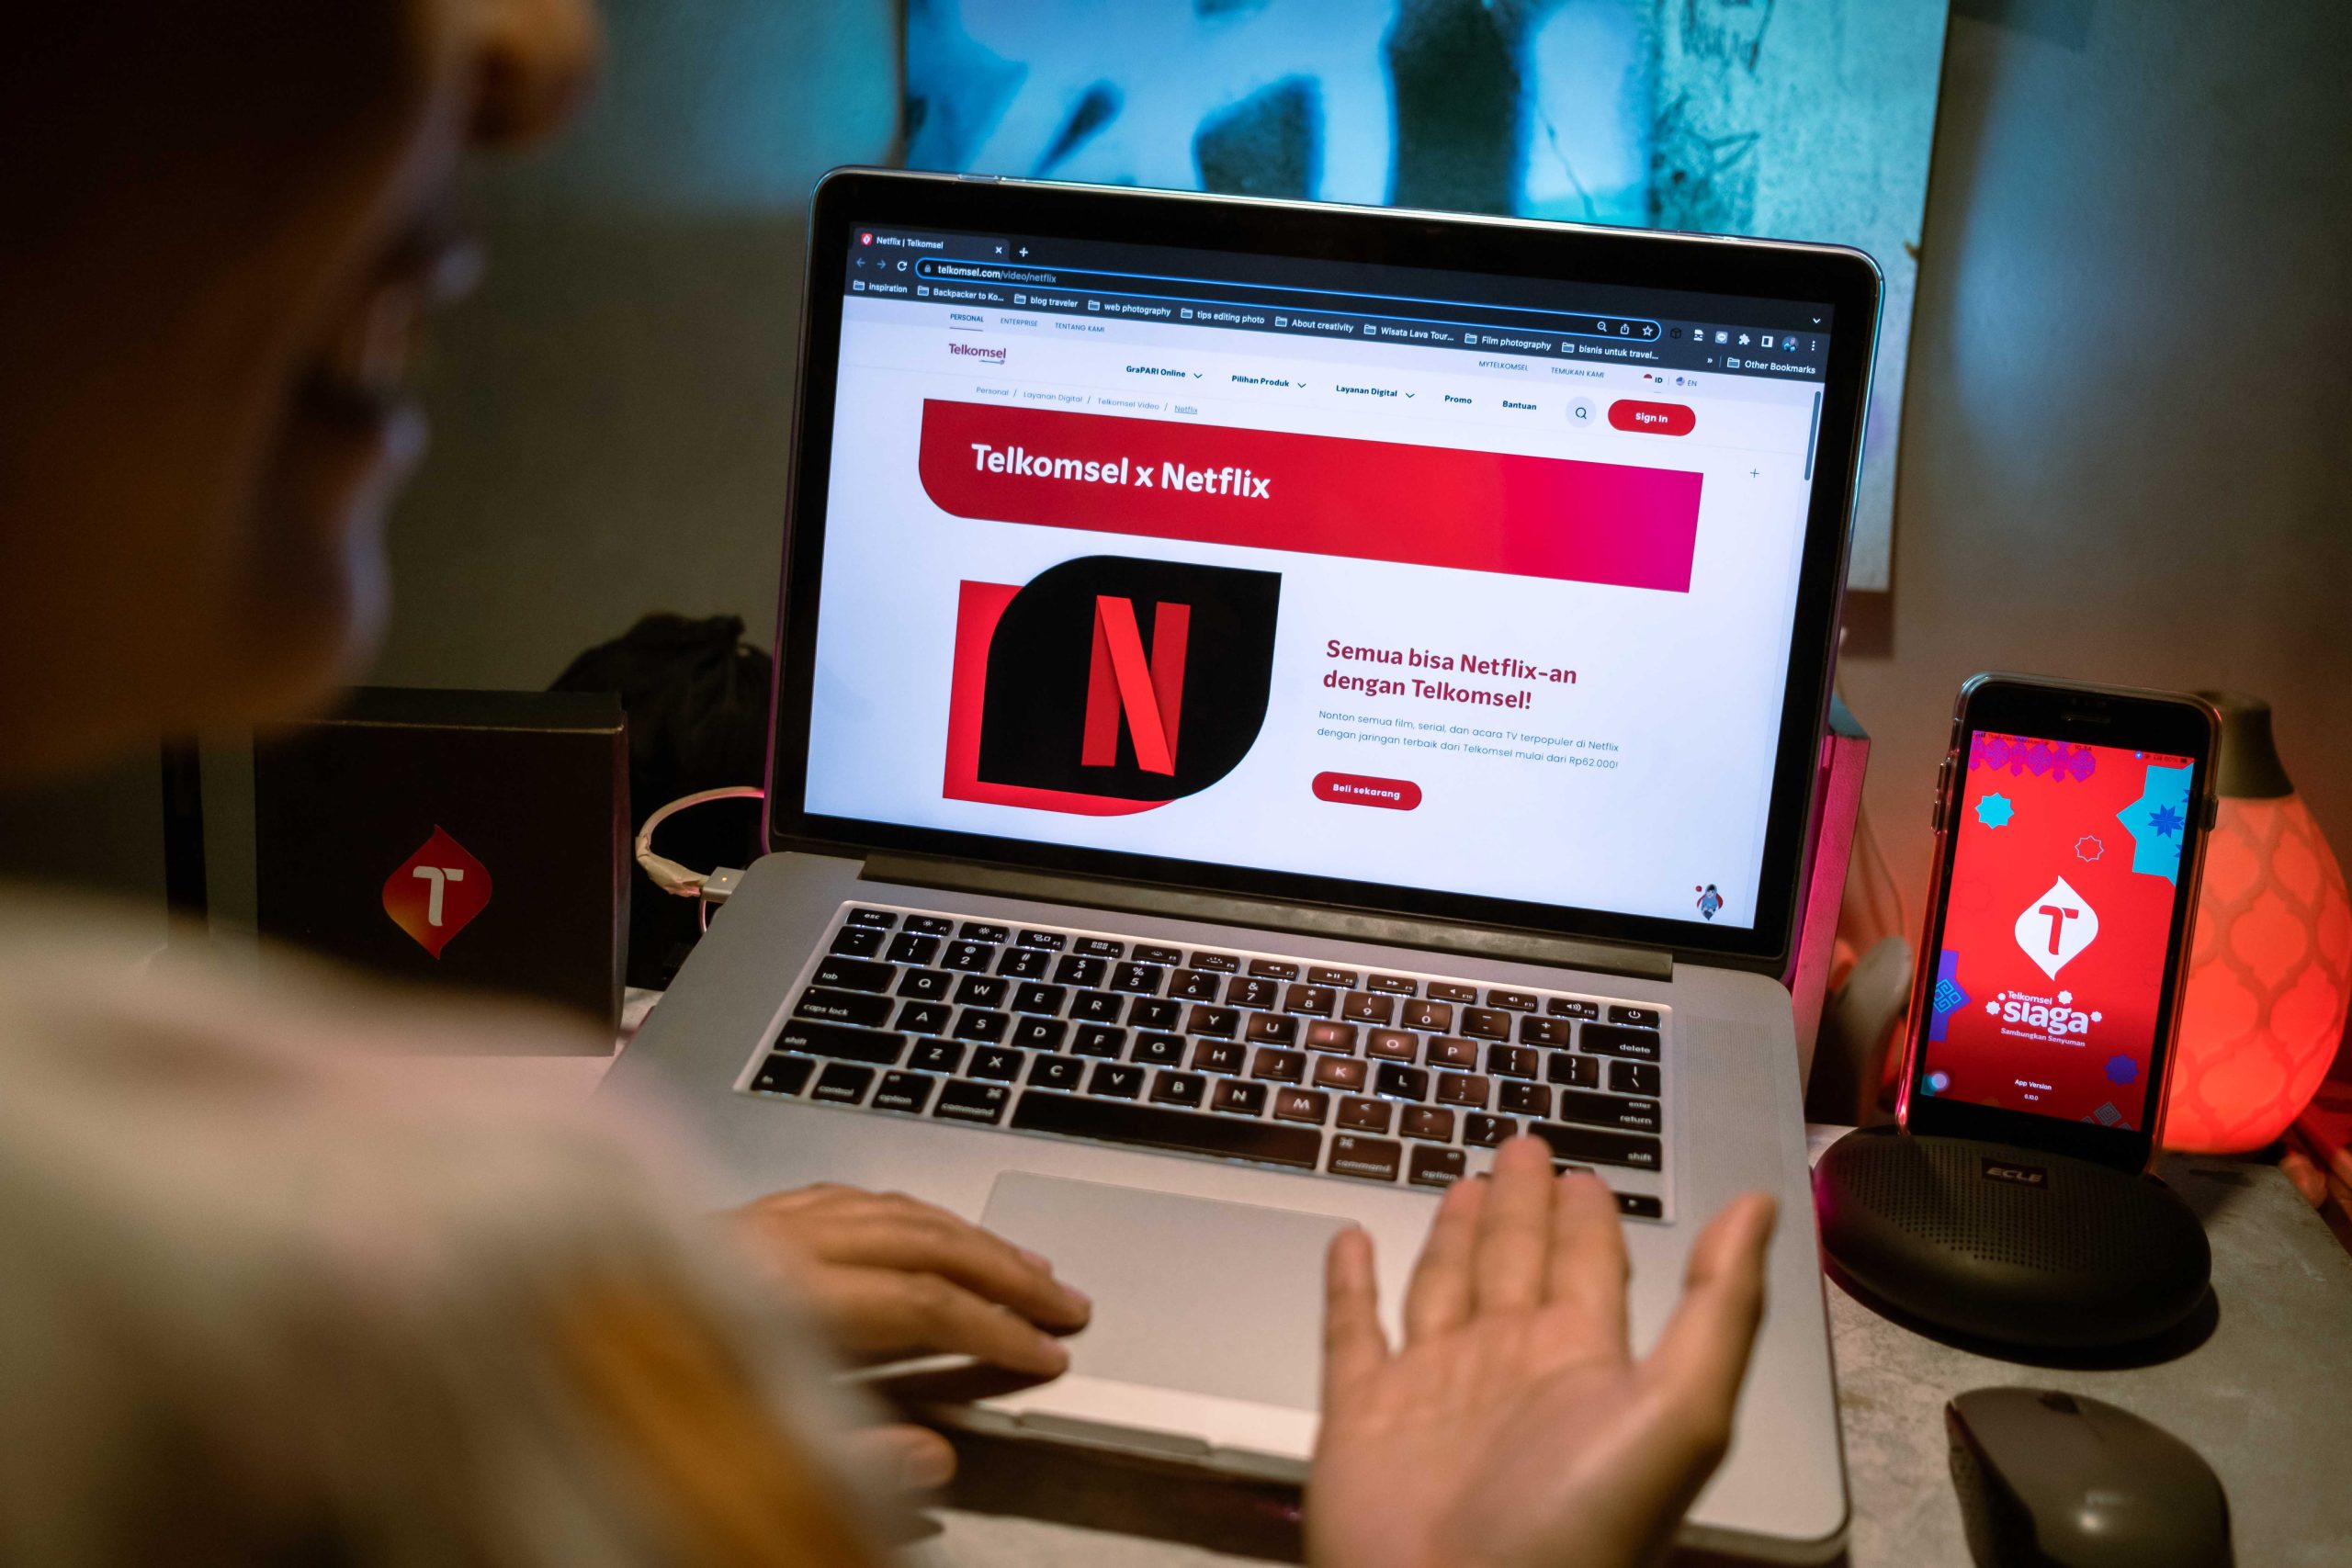 TelkomGroup melalui Telkomsel dan Indihome bekerja sama dengan Netflix untuk memudahkan pelanggan menikmati beragam konten serta tayangan favorit melalui berbagai perangkat seperti TV, laptop, smartphone, dan tablet. Pilihan paket khusus bagi pelanggan Te